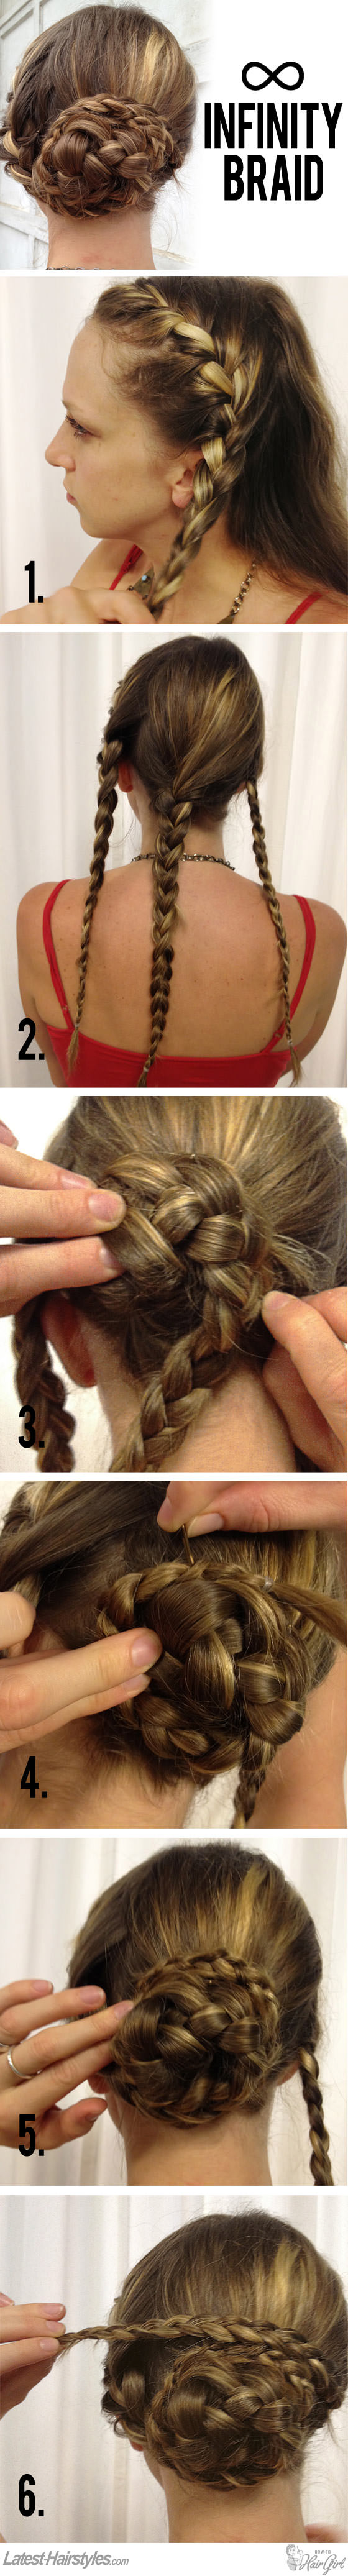 infinity braid hair tutorial